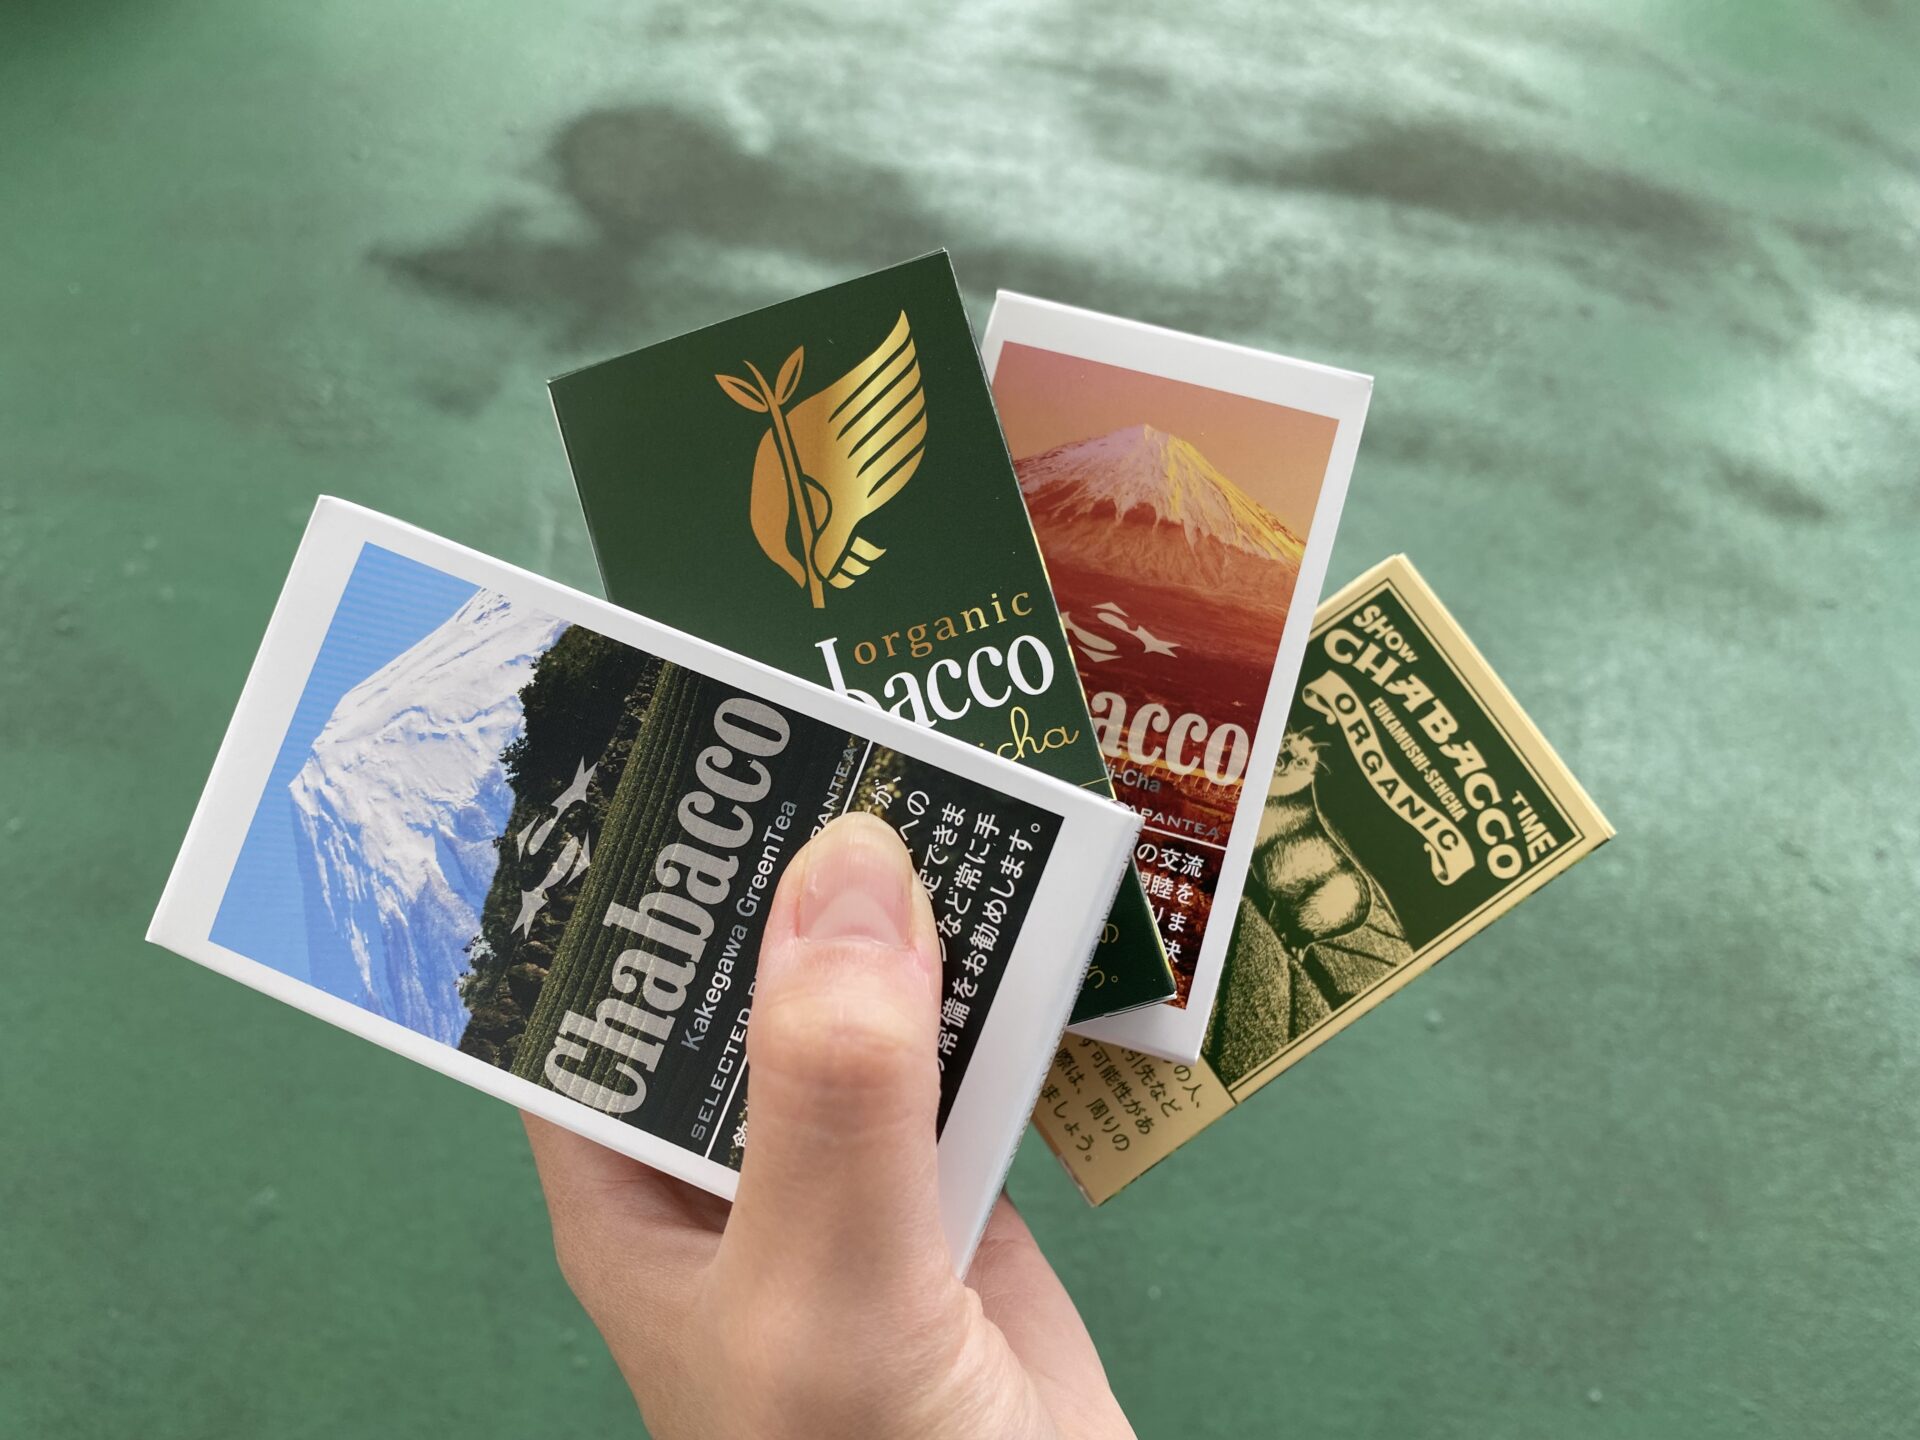 タバコのような見た目の粉末のお茶、チャバコのパッケージ４種類を手に持った写真